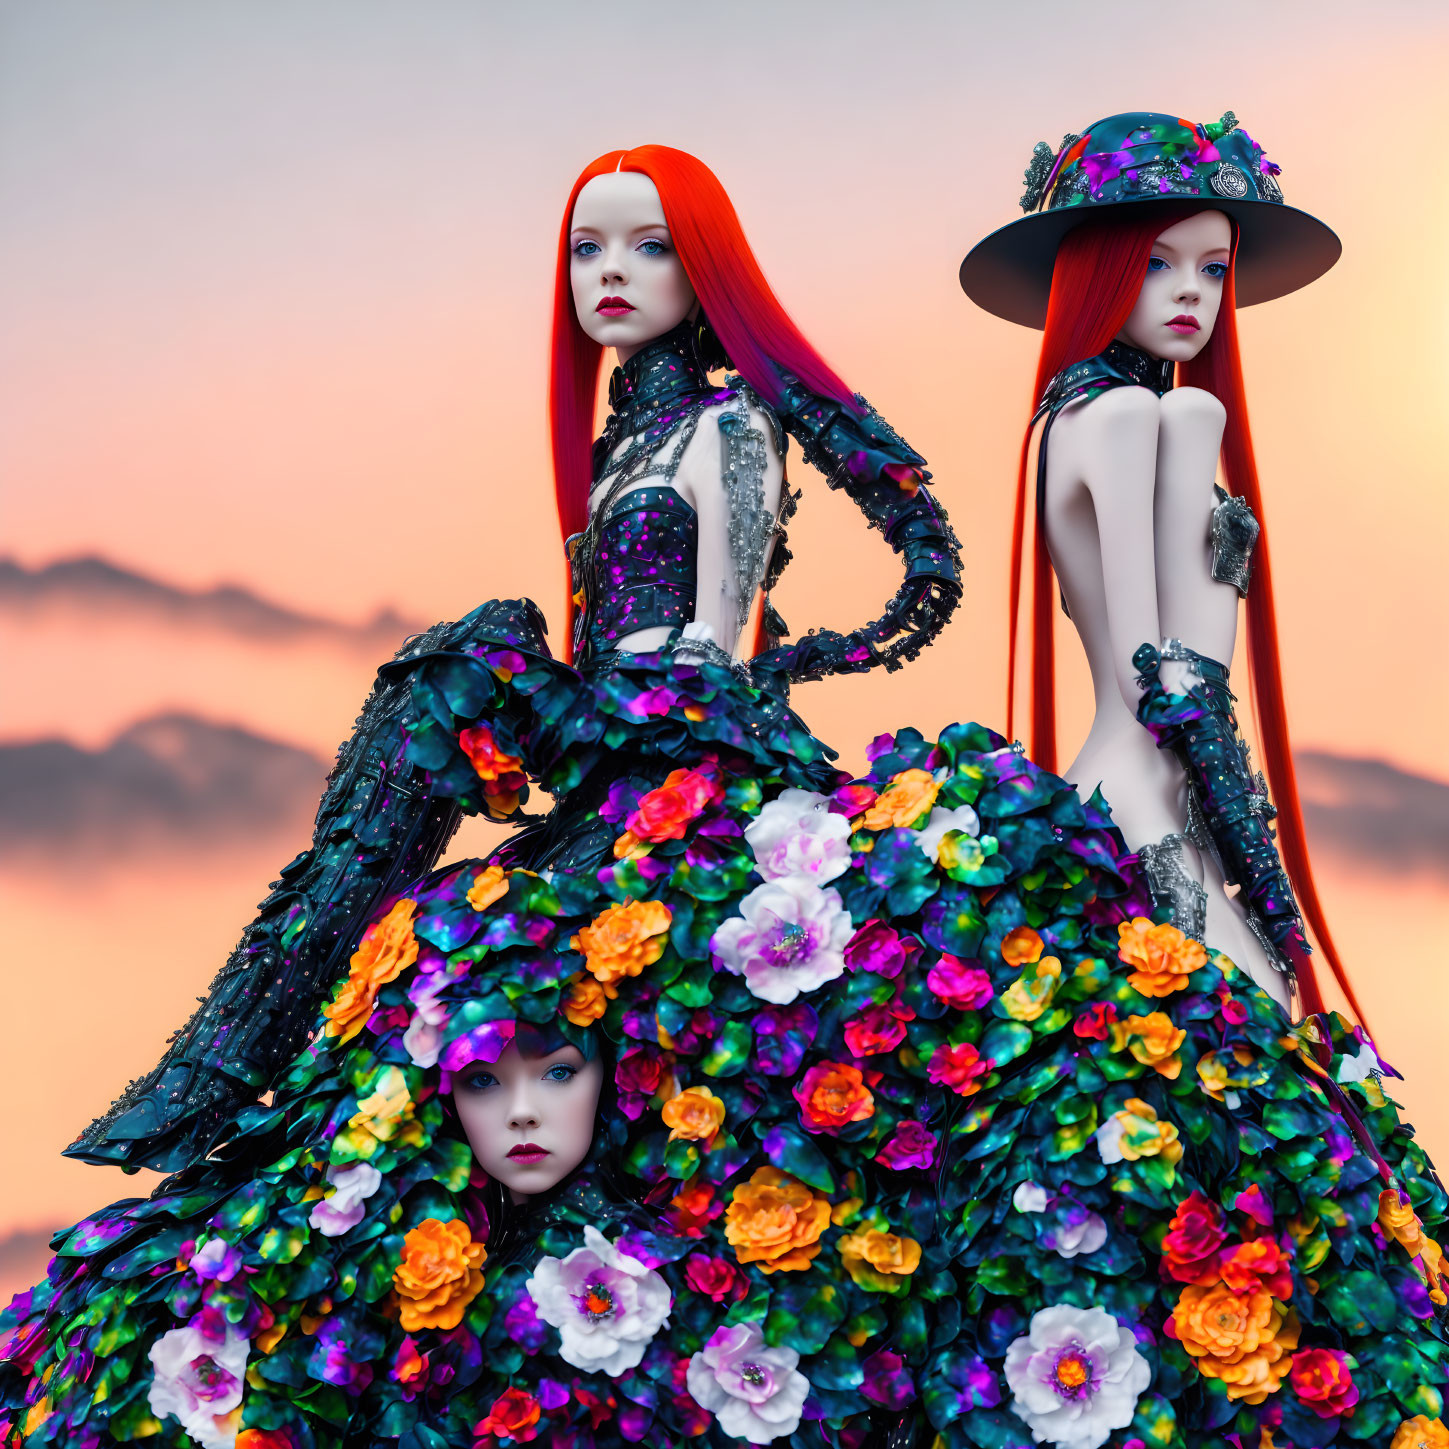 Mannequins in Floral Dresses Under Sunset Sky